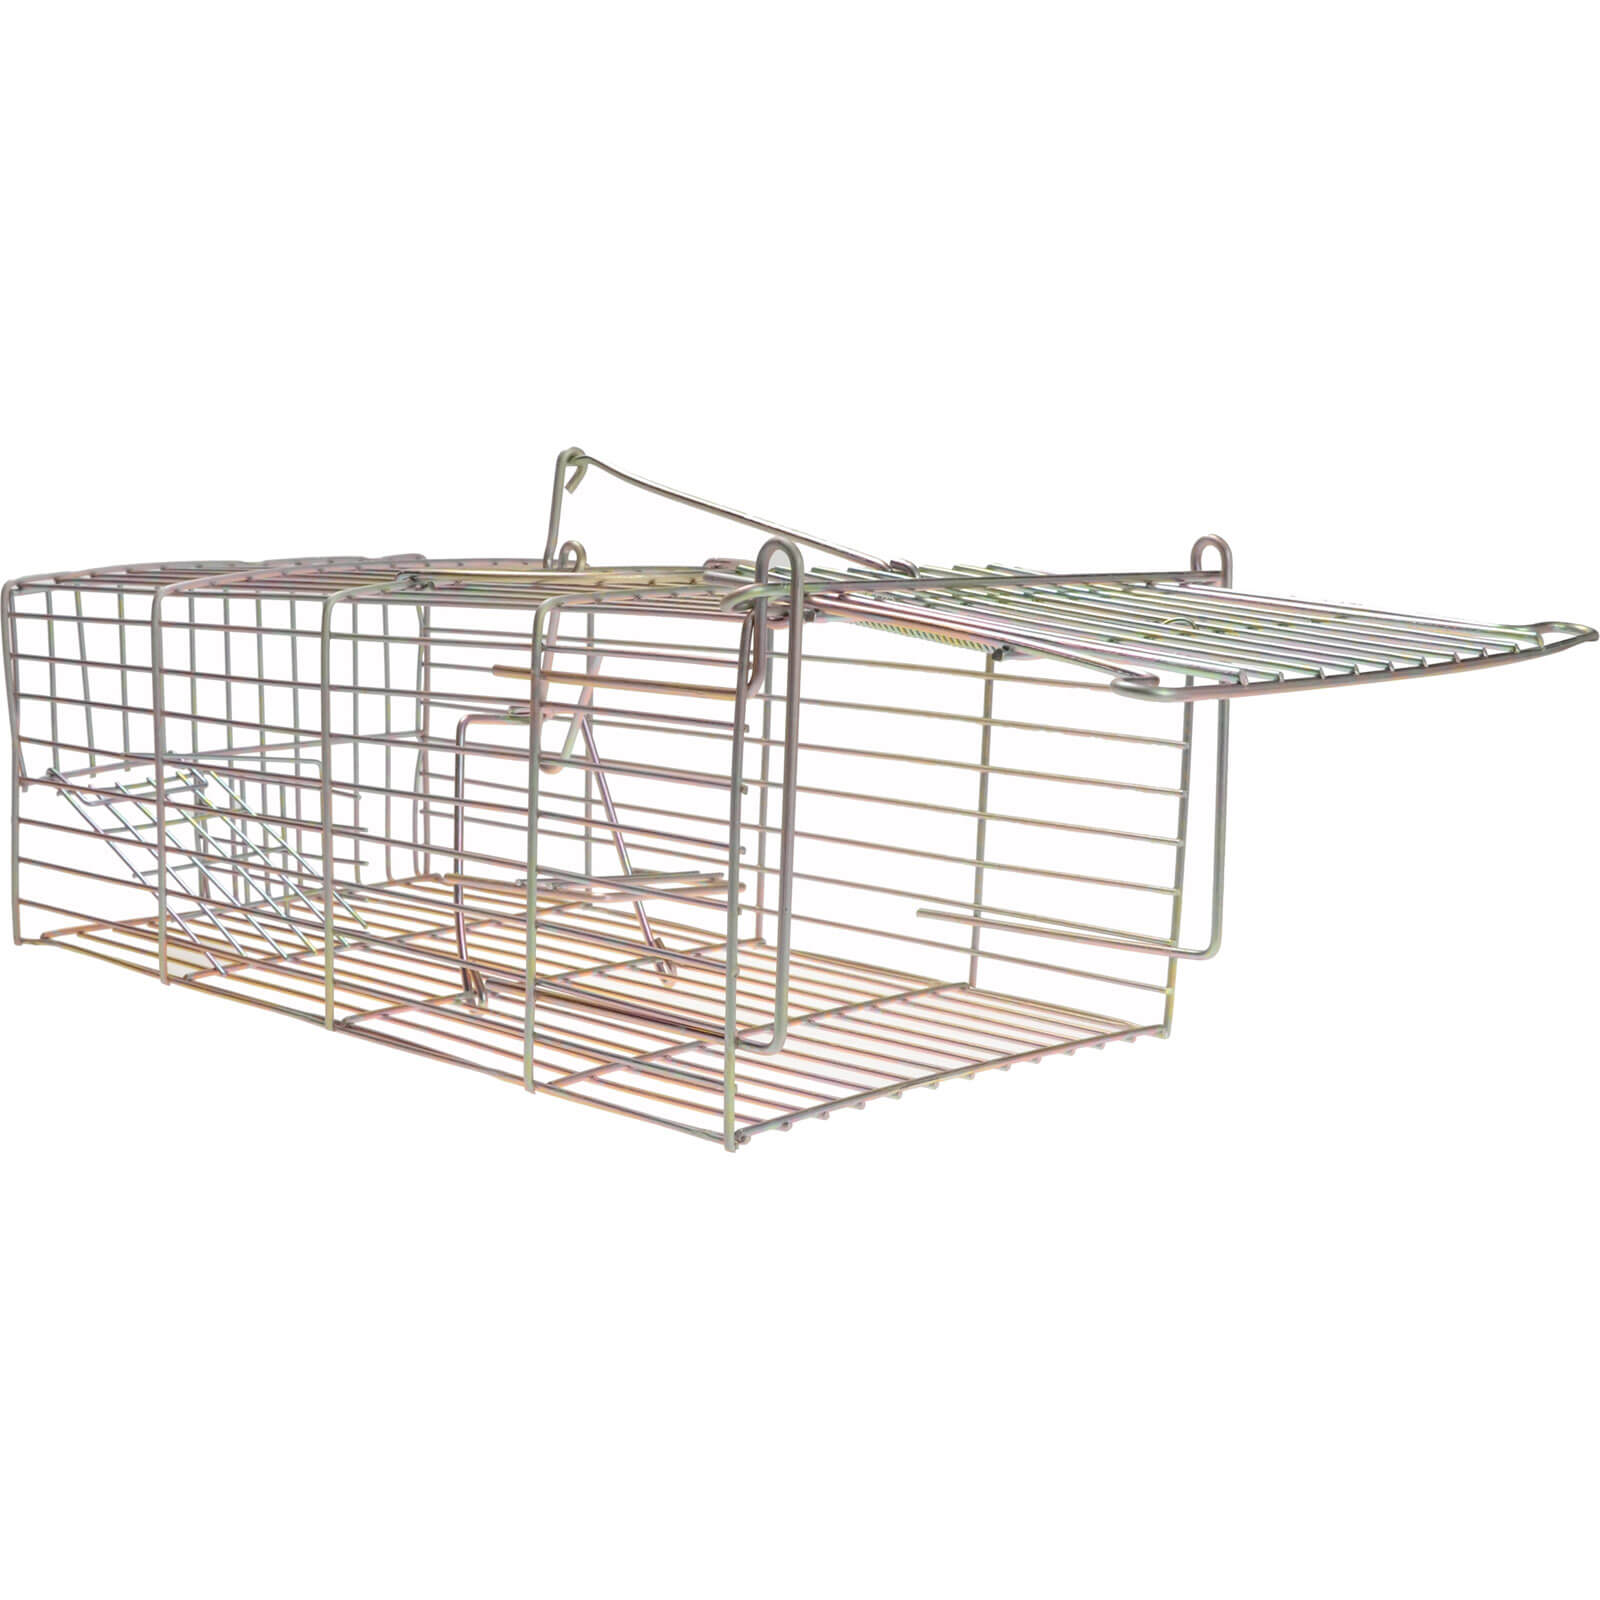 Image of Rentokil Rat Cage Trap